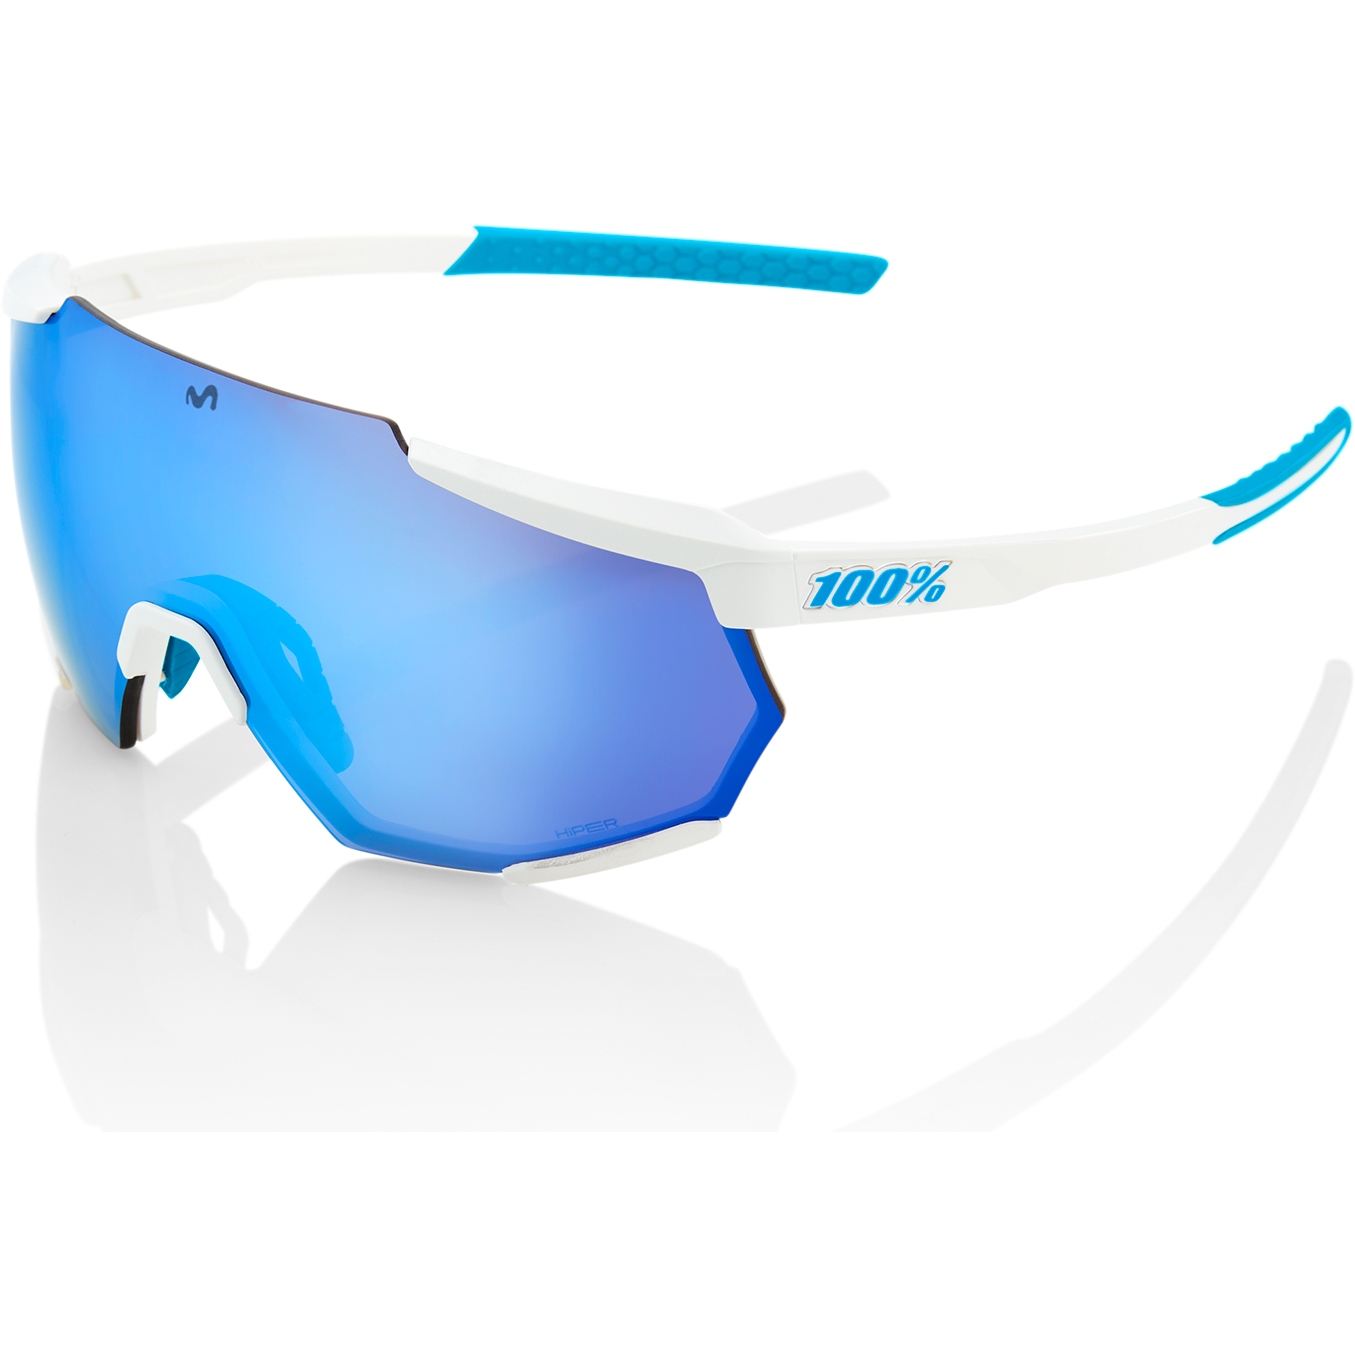 Produktbild von 100% Racetrap 3.0 Movistar Brille - HiPER Multilayer Mirror Lens - Team White / Blue + Clear